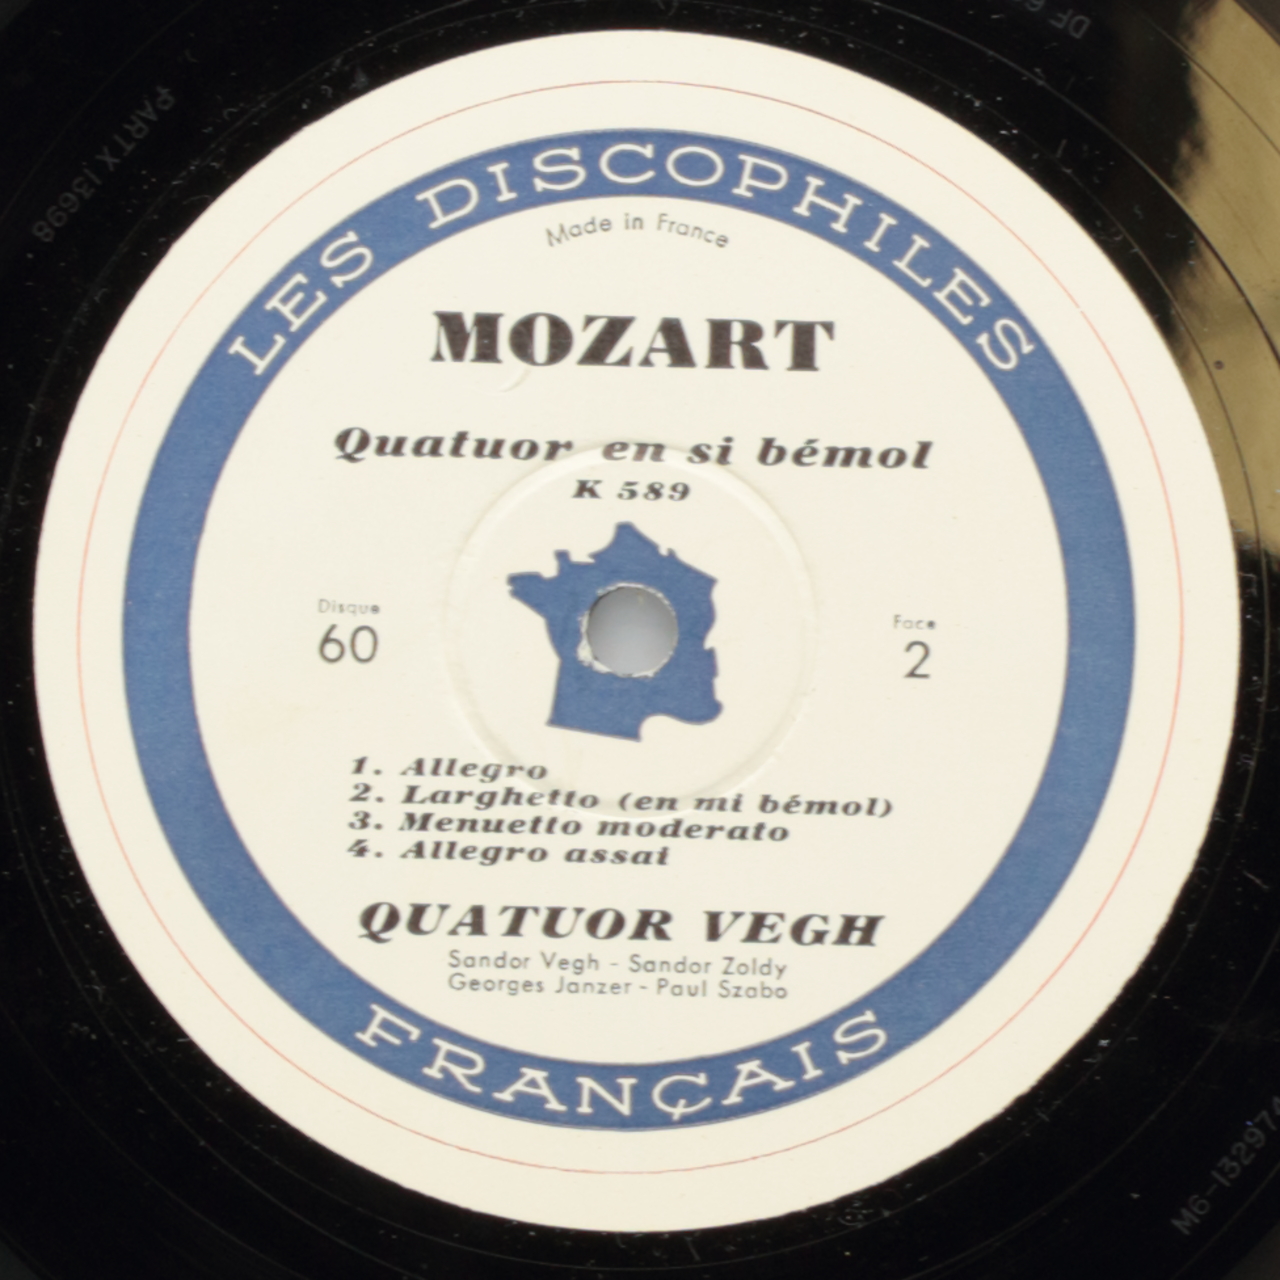 Mozart: Quatuor en ré majeur (K. 499); Quatuor en si bémol (K. 589)